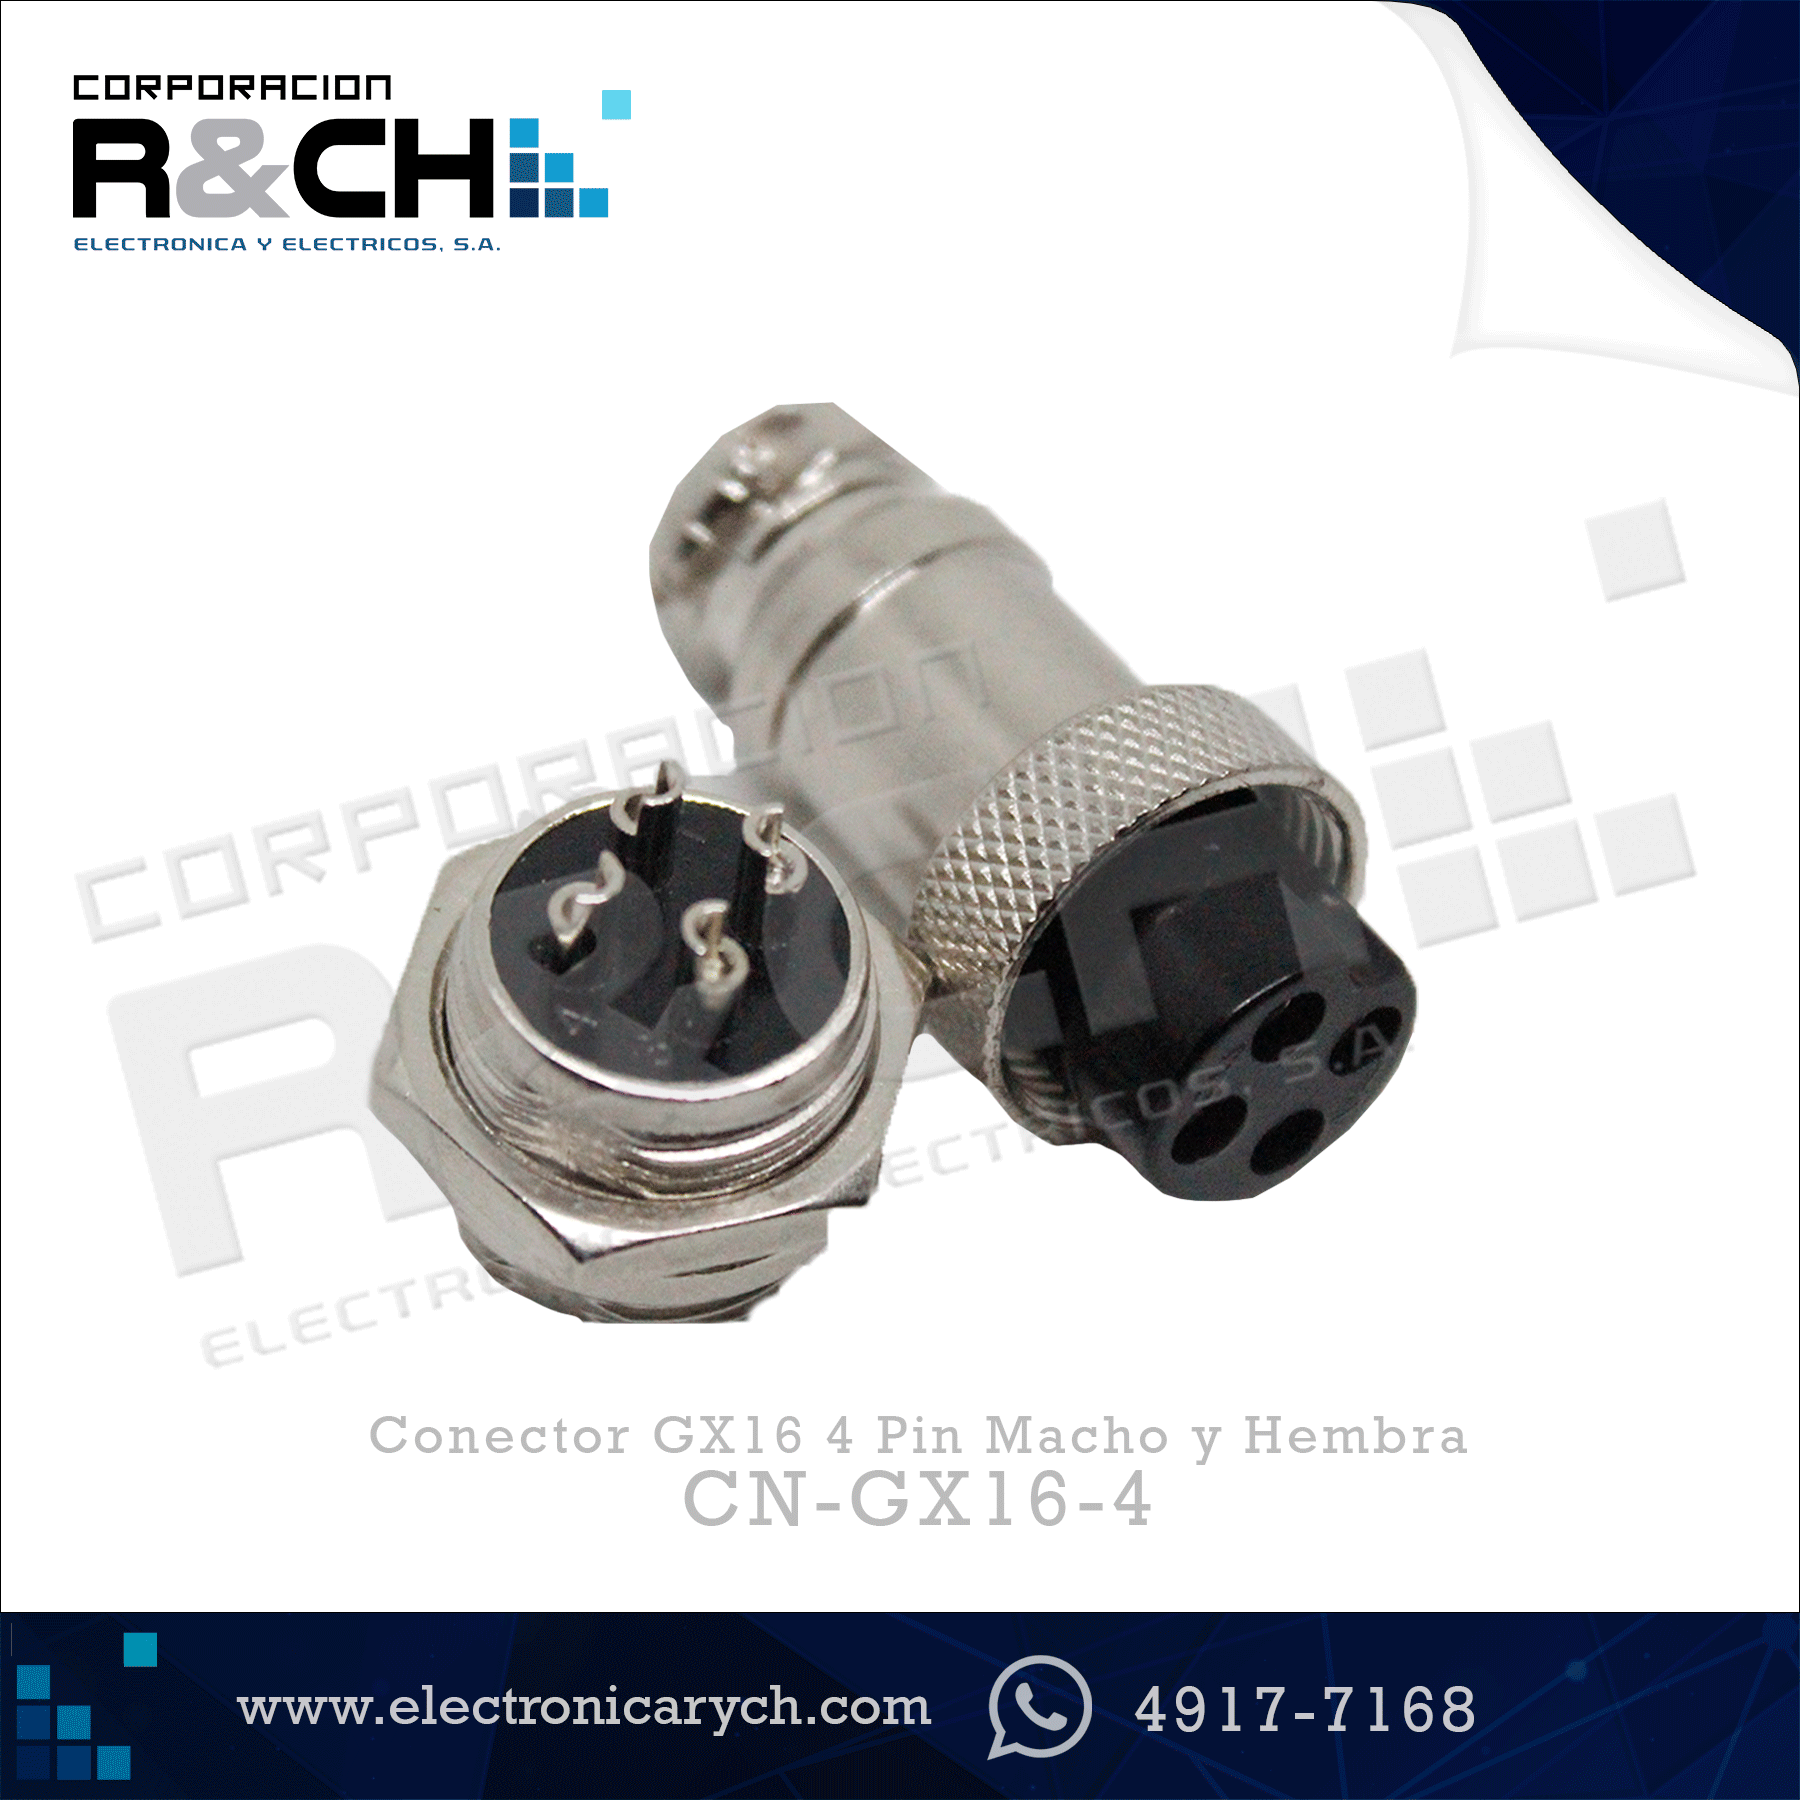 CN-GX16-4 Conector GX16 4 Pin Macho y Hembra